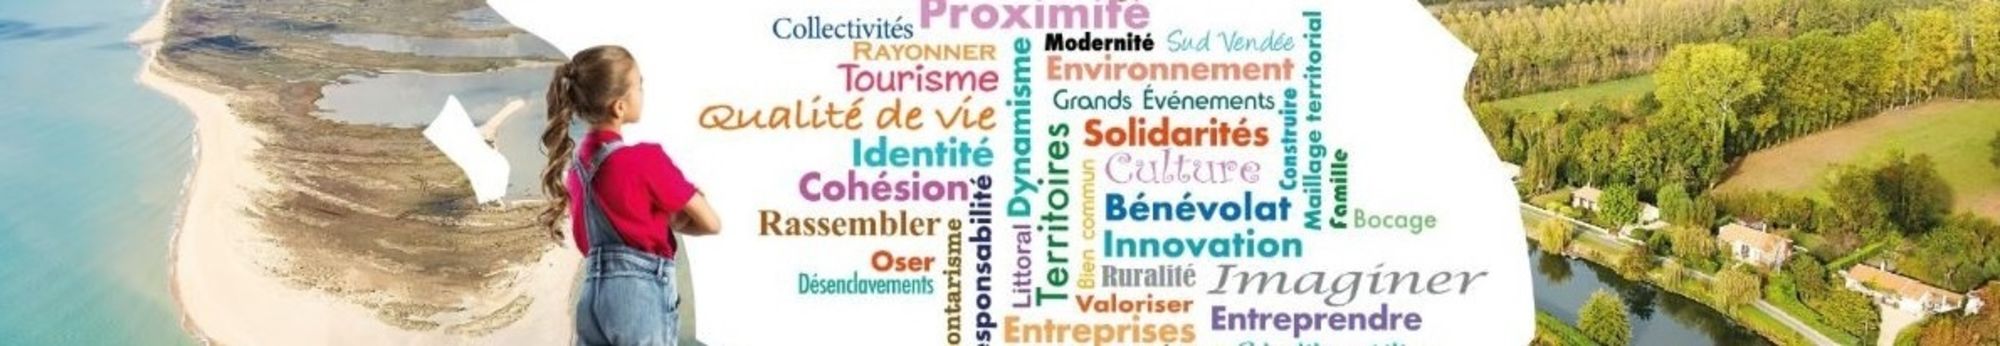 Conseil départemental de la Vendée